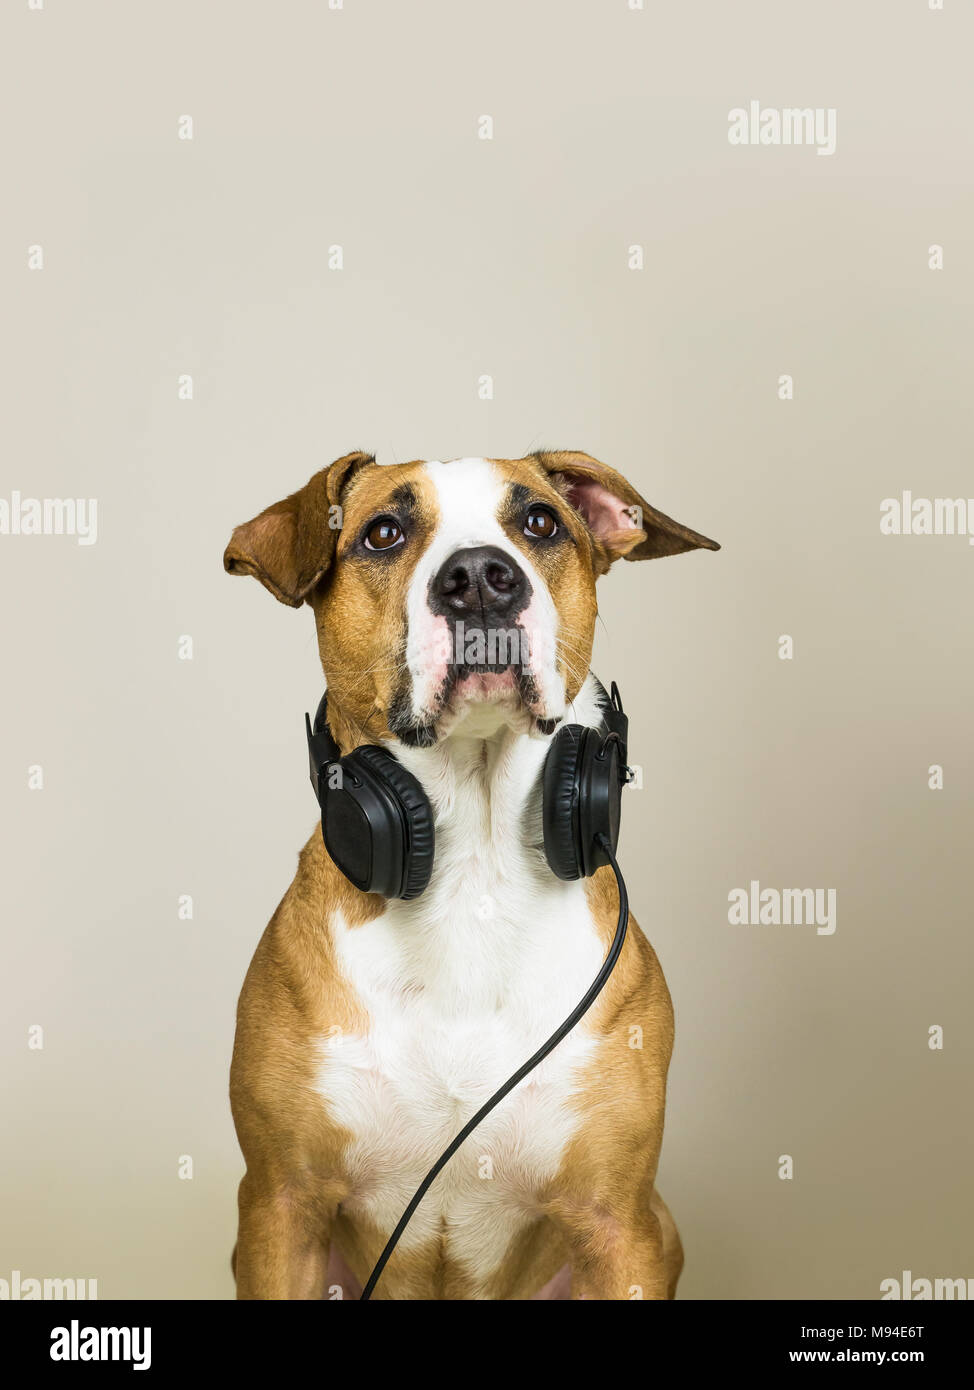 headset Alamy Hund – und mit in Auflösung -Bildmaterial hoher -Fotos